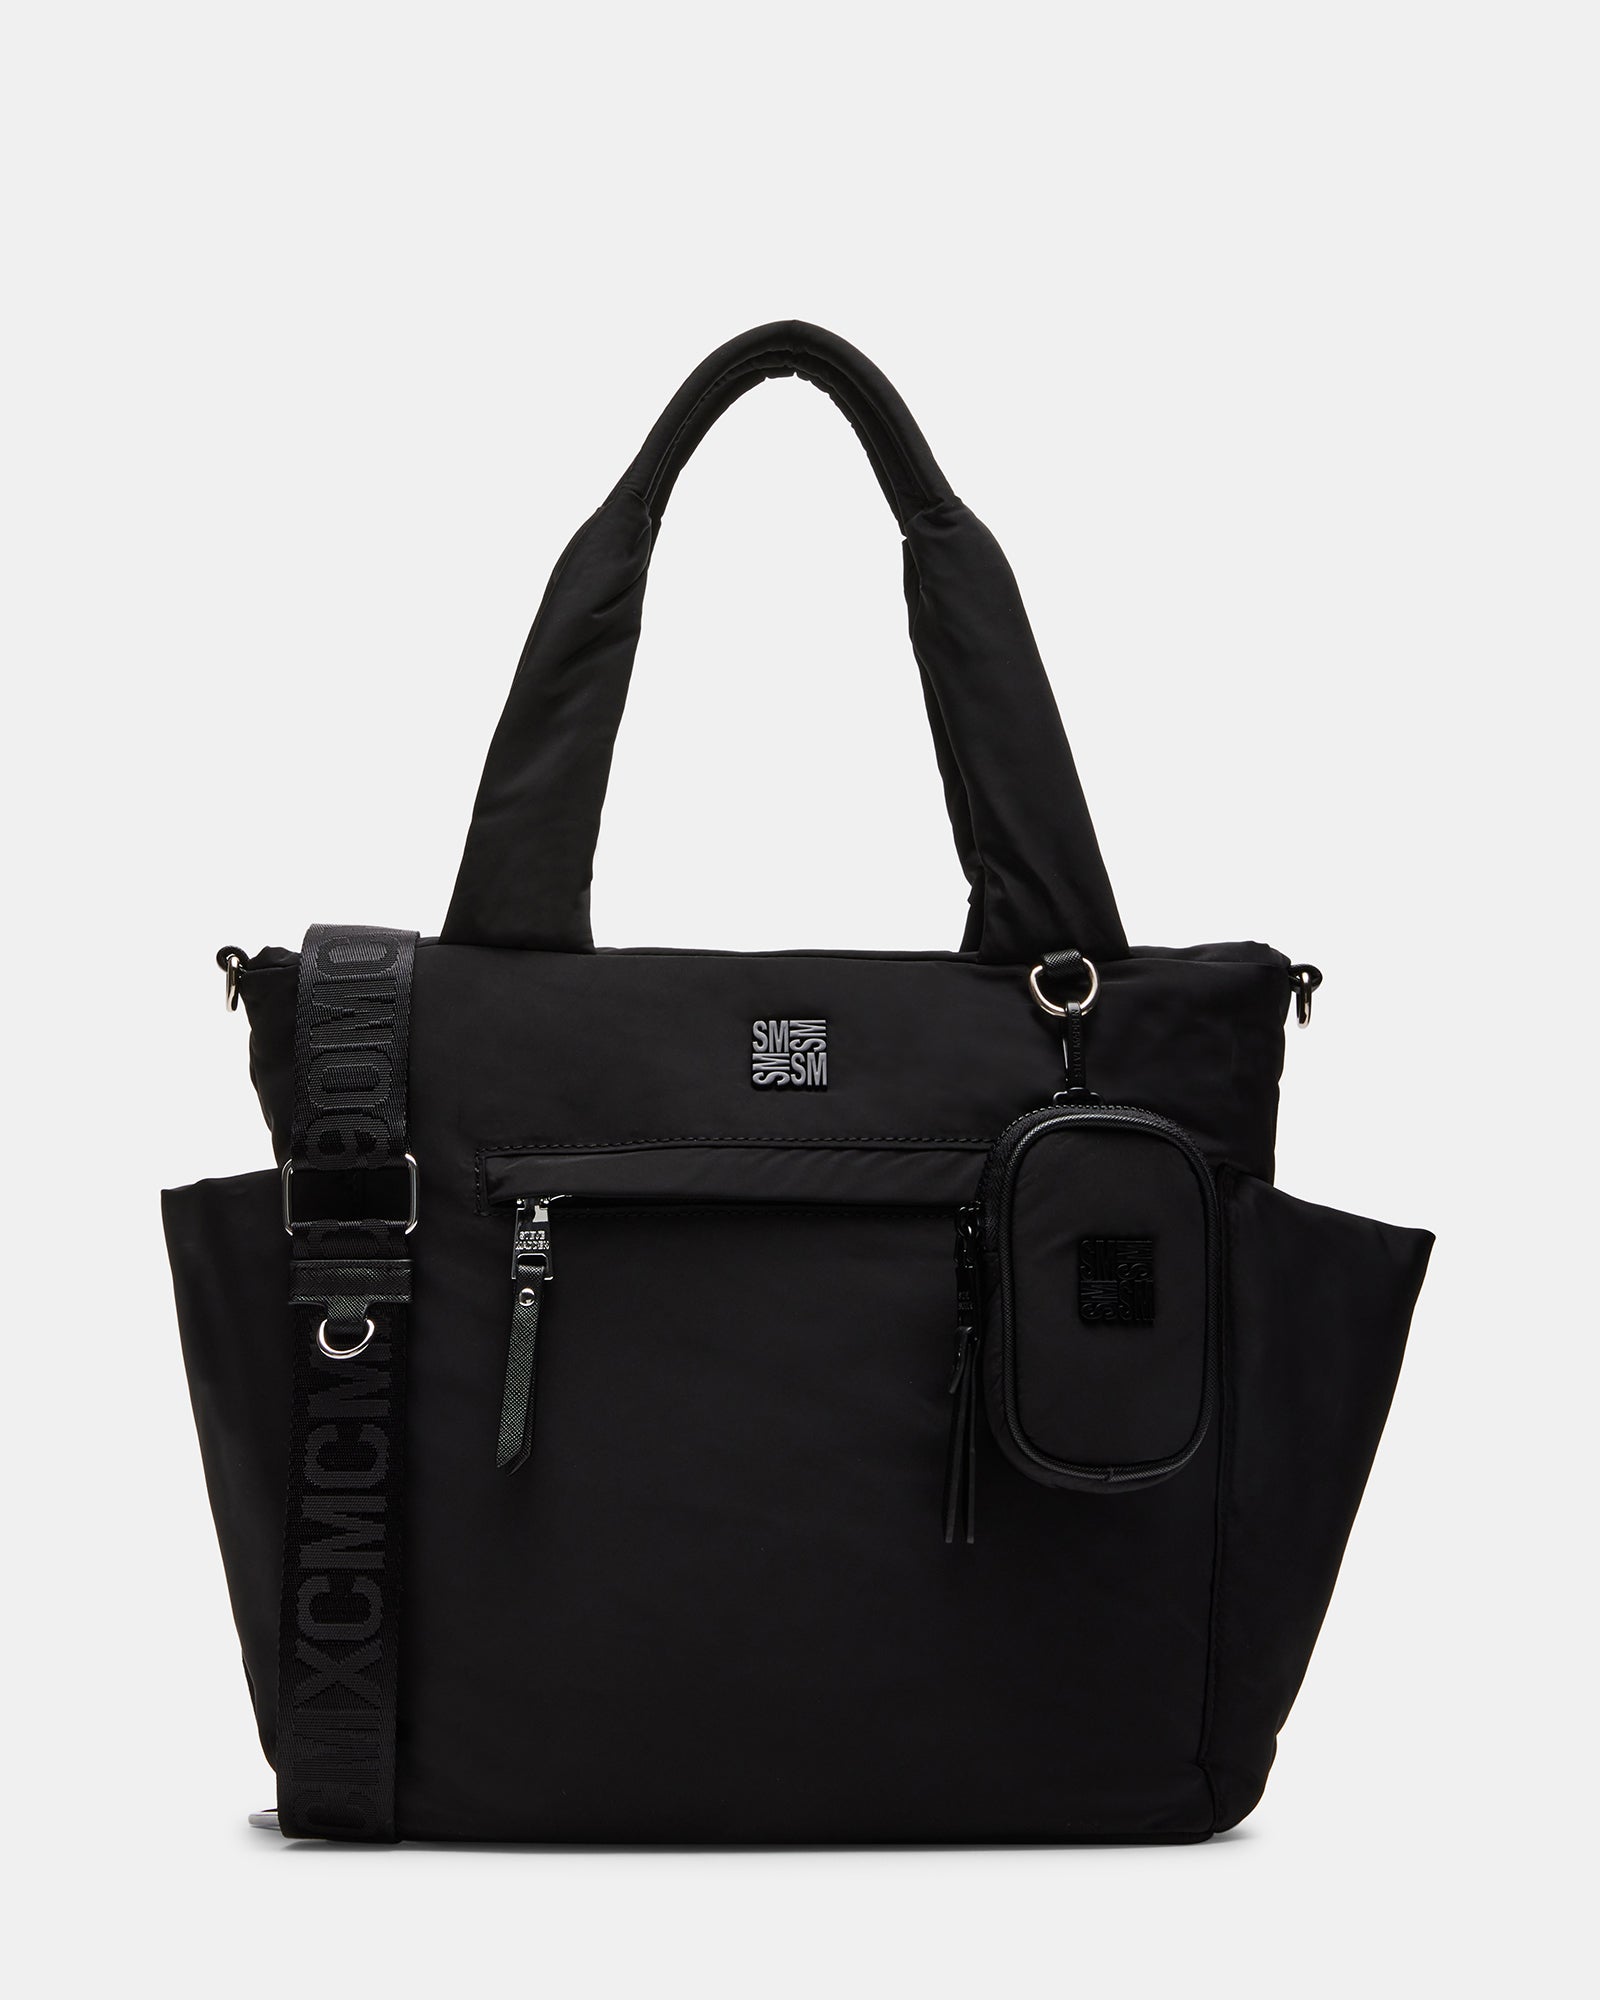 Steve Madden Women's Dt521085 Black Handbag